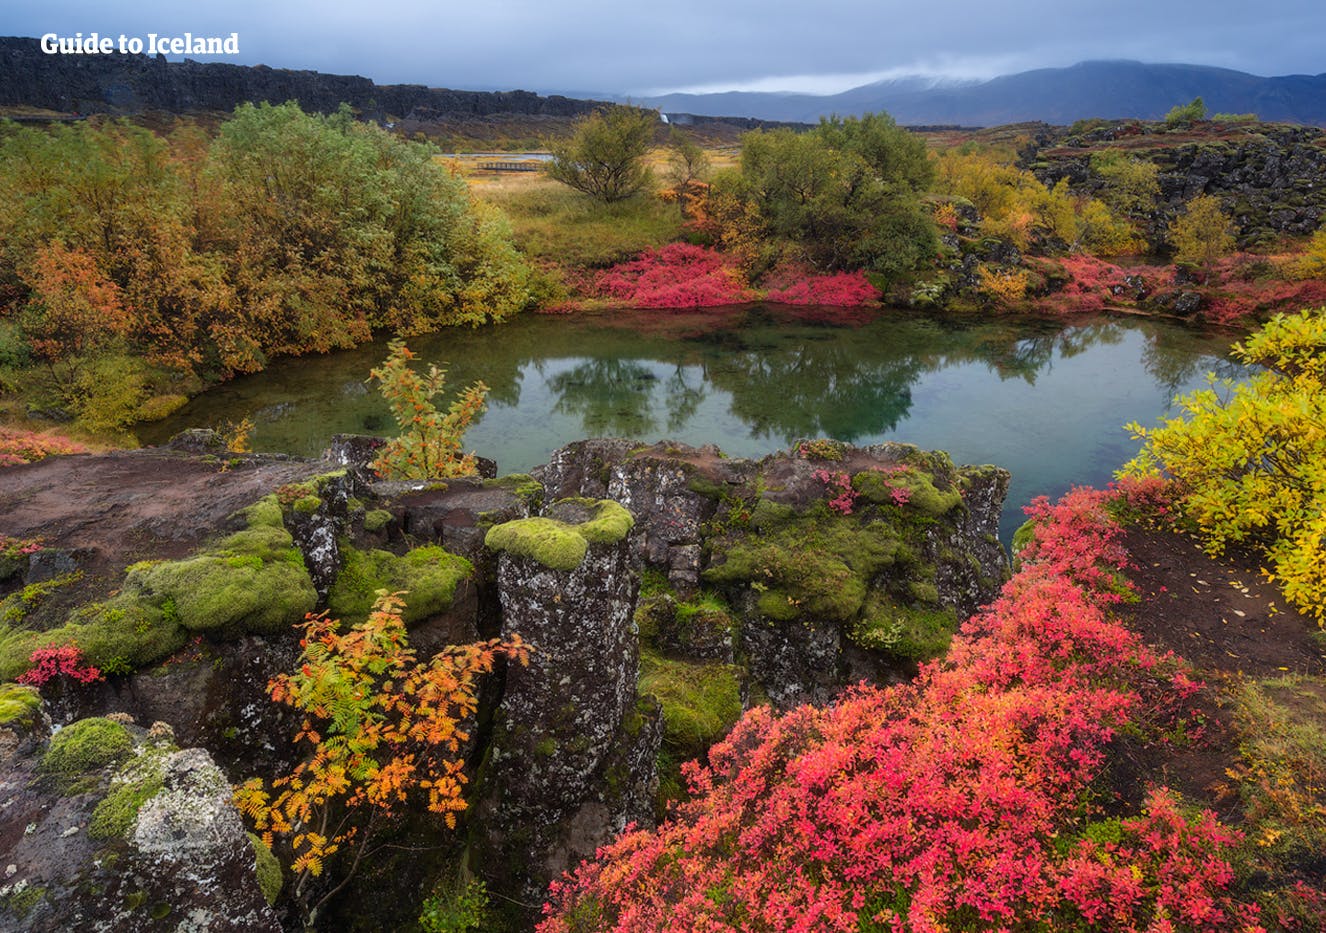 I mille colori del Parco Nazionale di Thingvellir, parte del famoso percorso turistico del Circolo d'Oro.